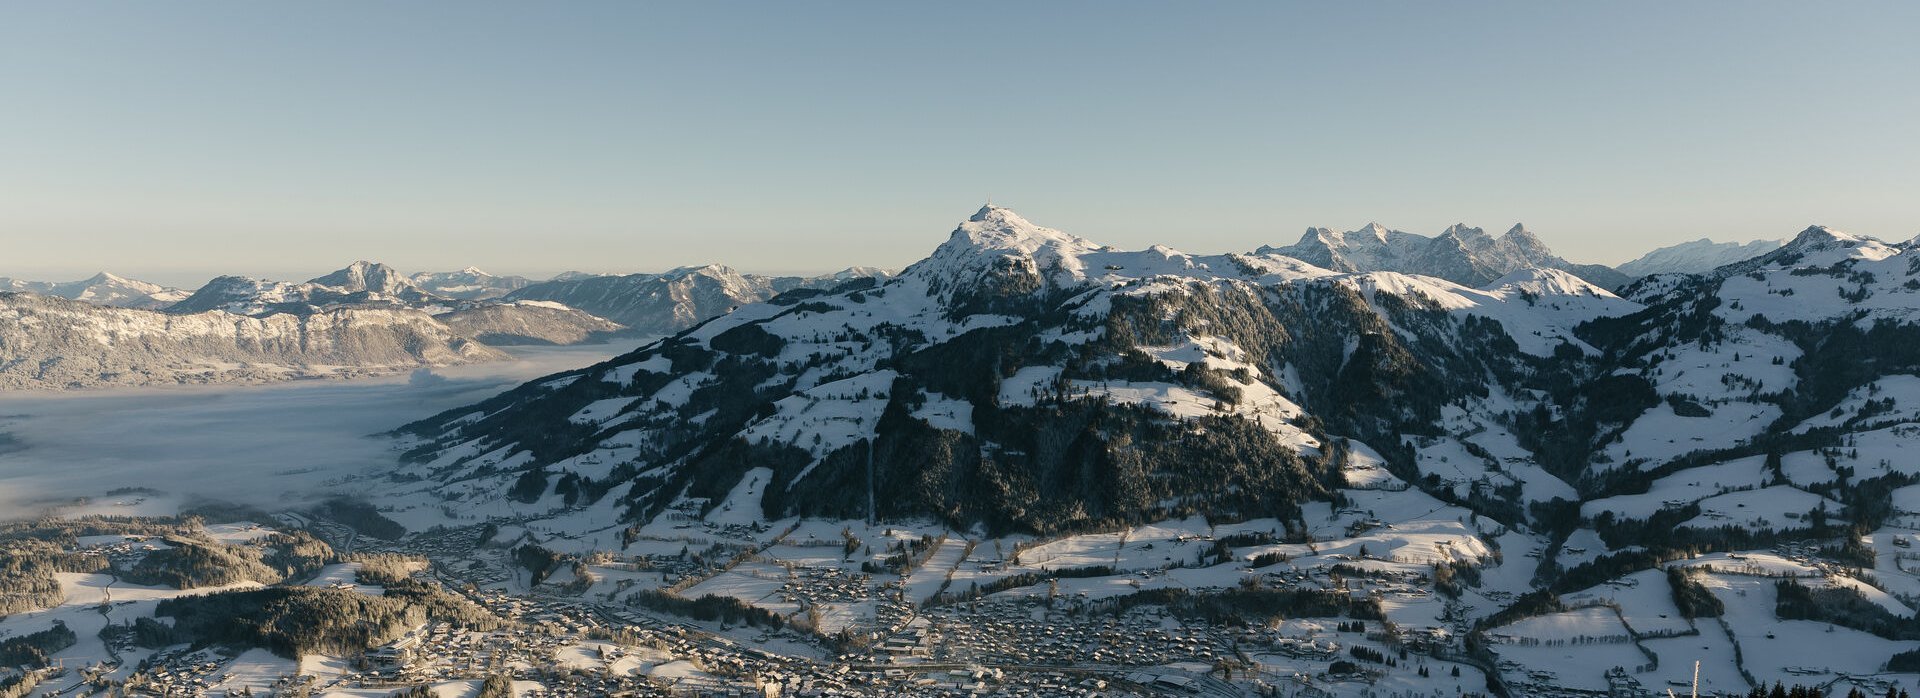 Kitzbüheler Landschaft im Winter Berge im Schnee